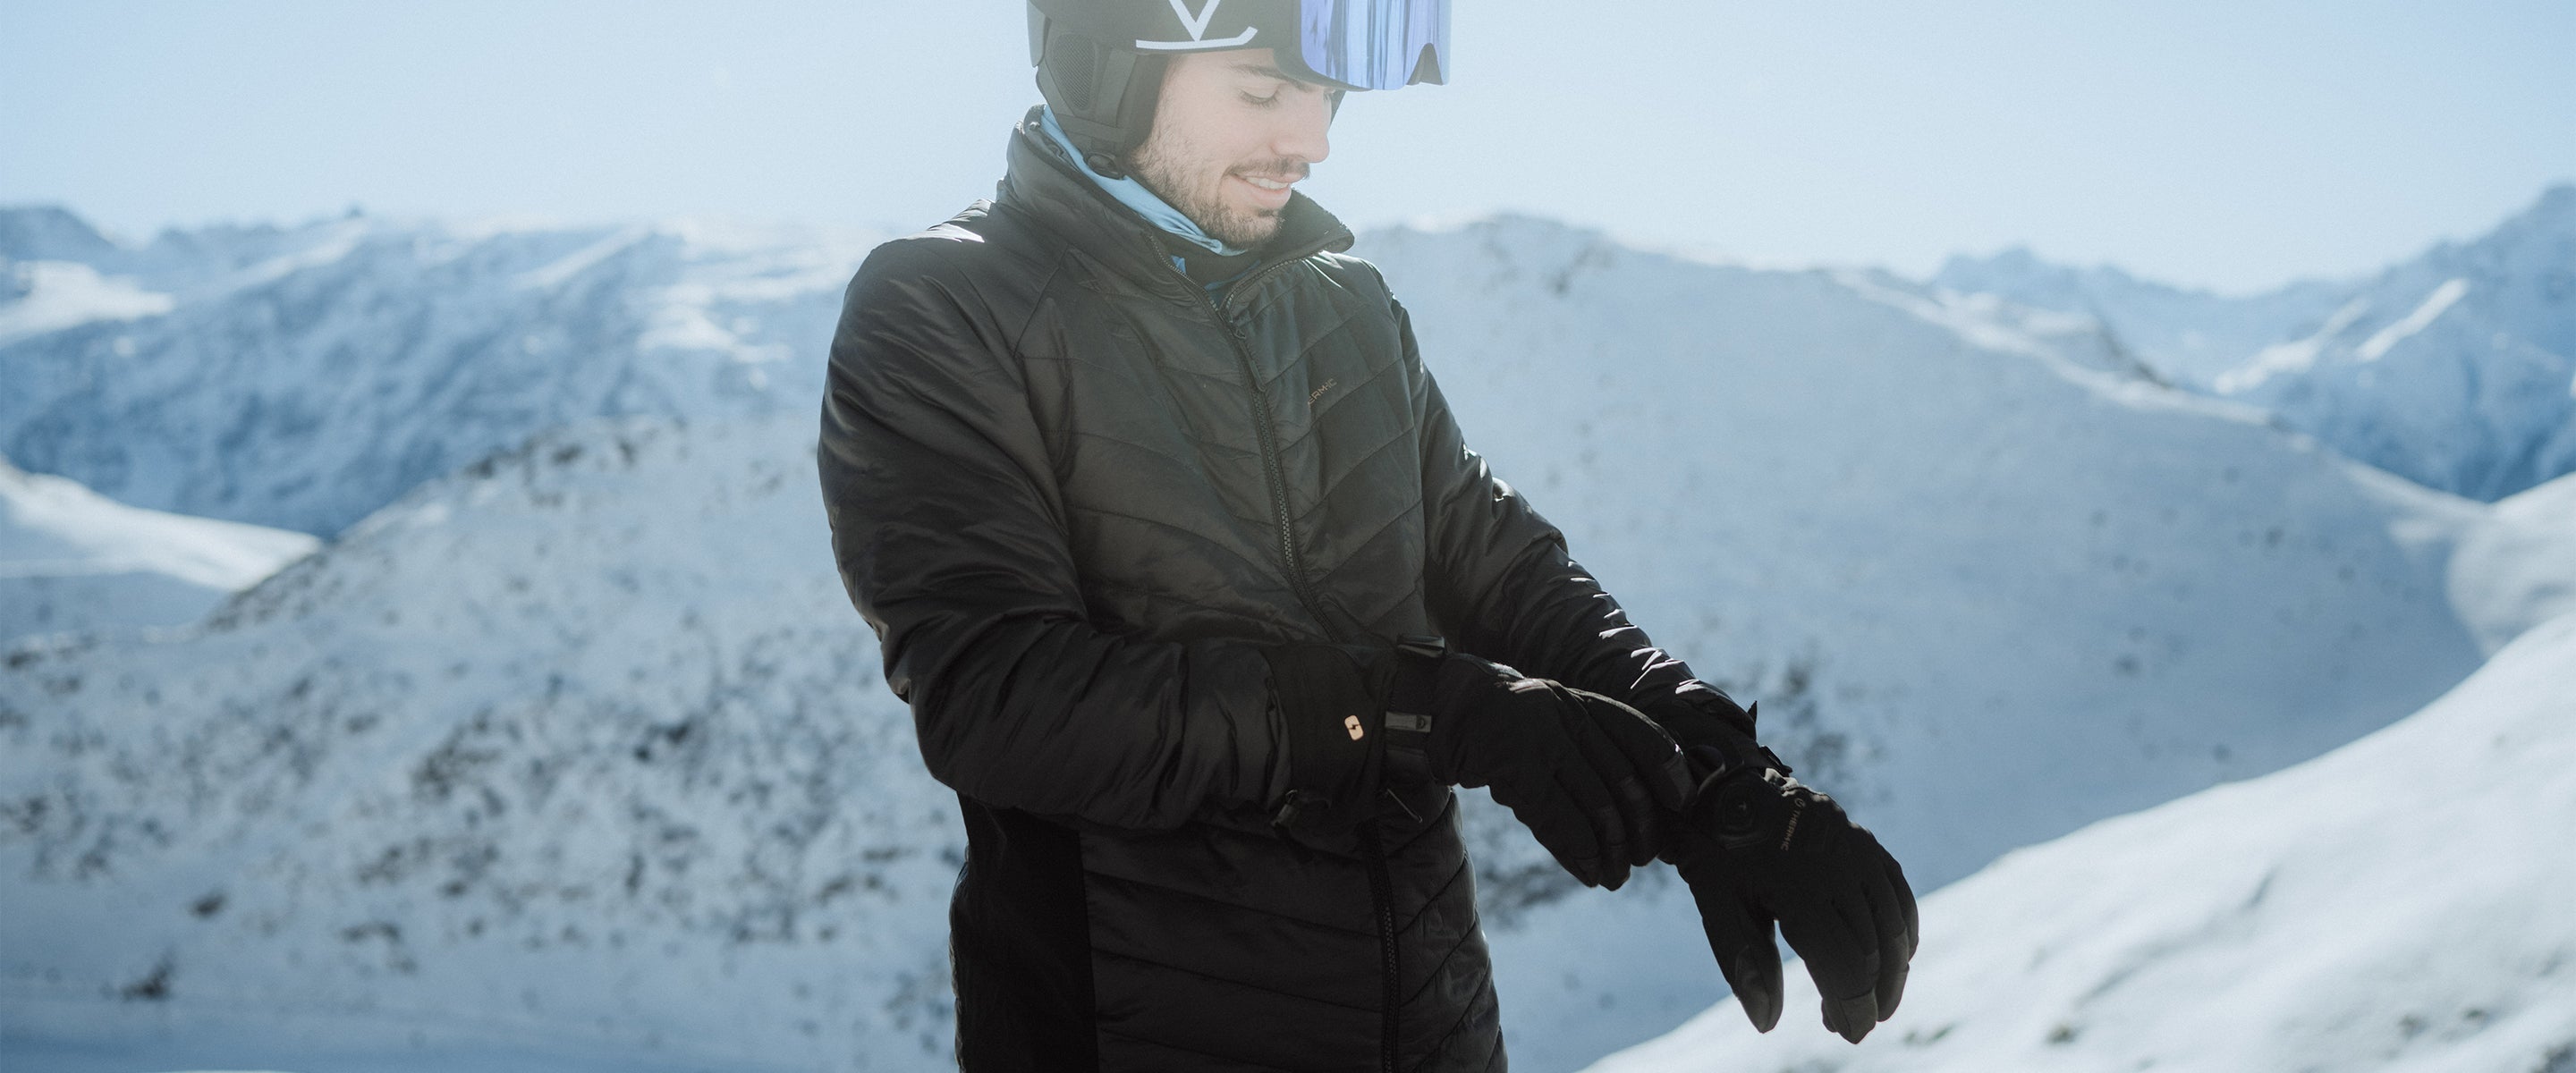 Gants de ski chauffants : tout ce que vous devez savoir – Oberson